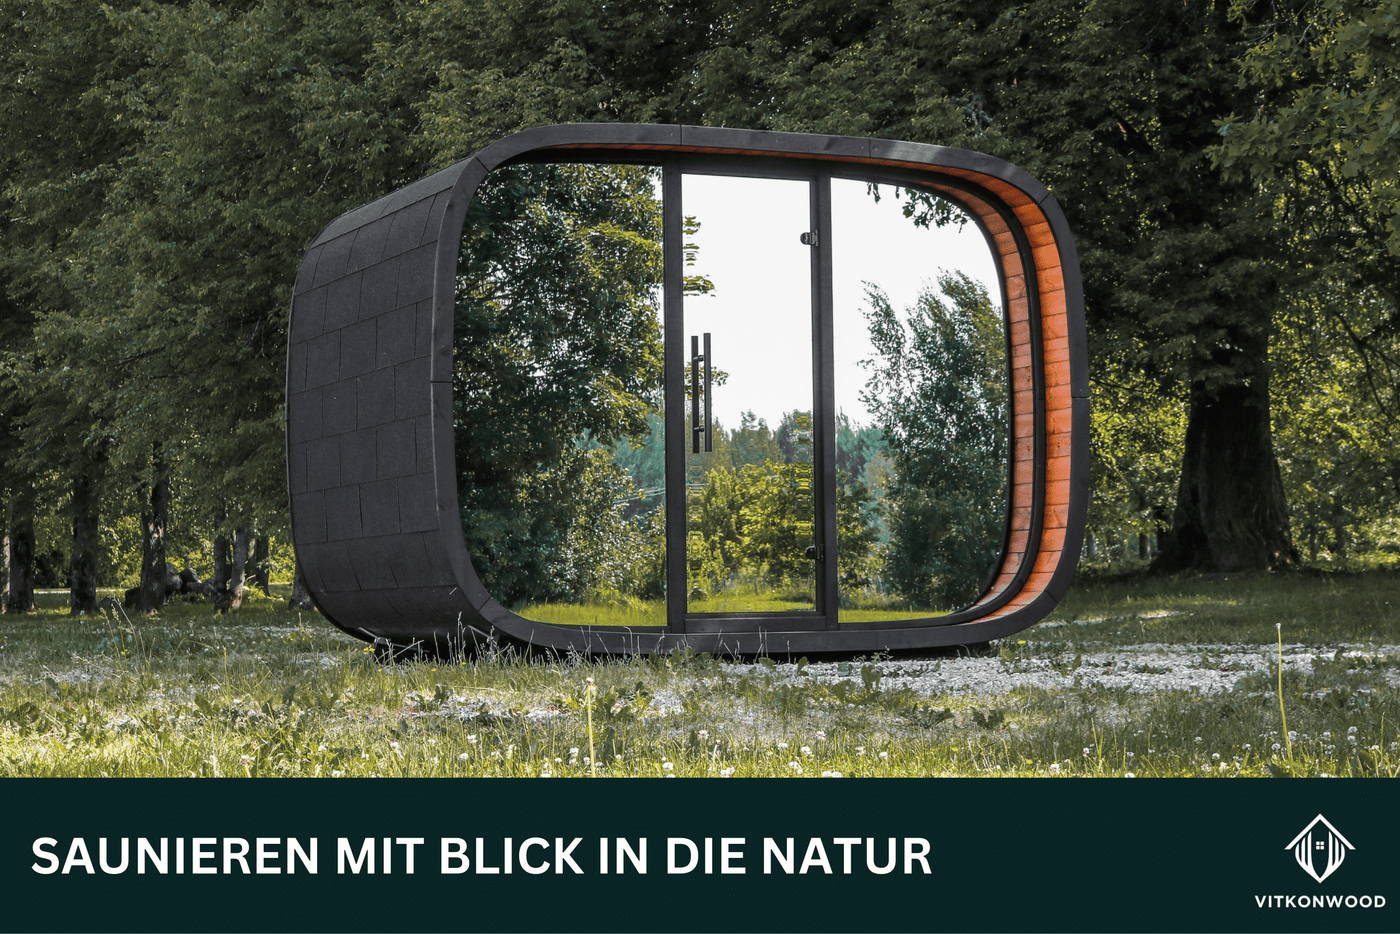 Moderne Gartensauna - Sauna Cube VITKON RELAX